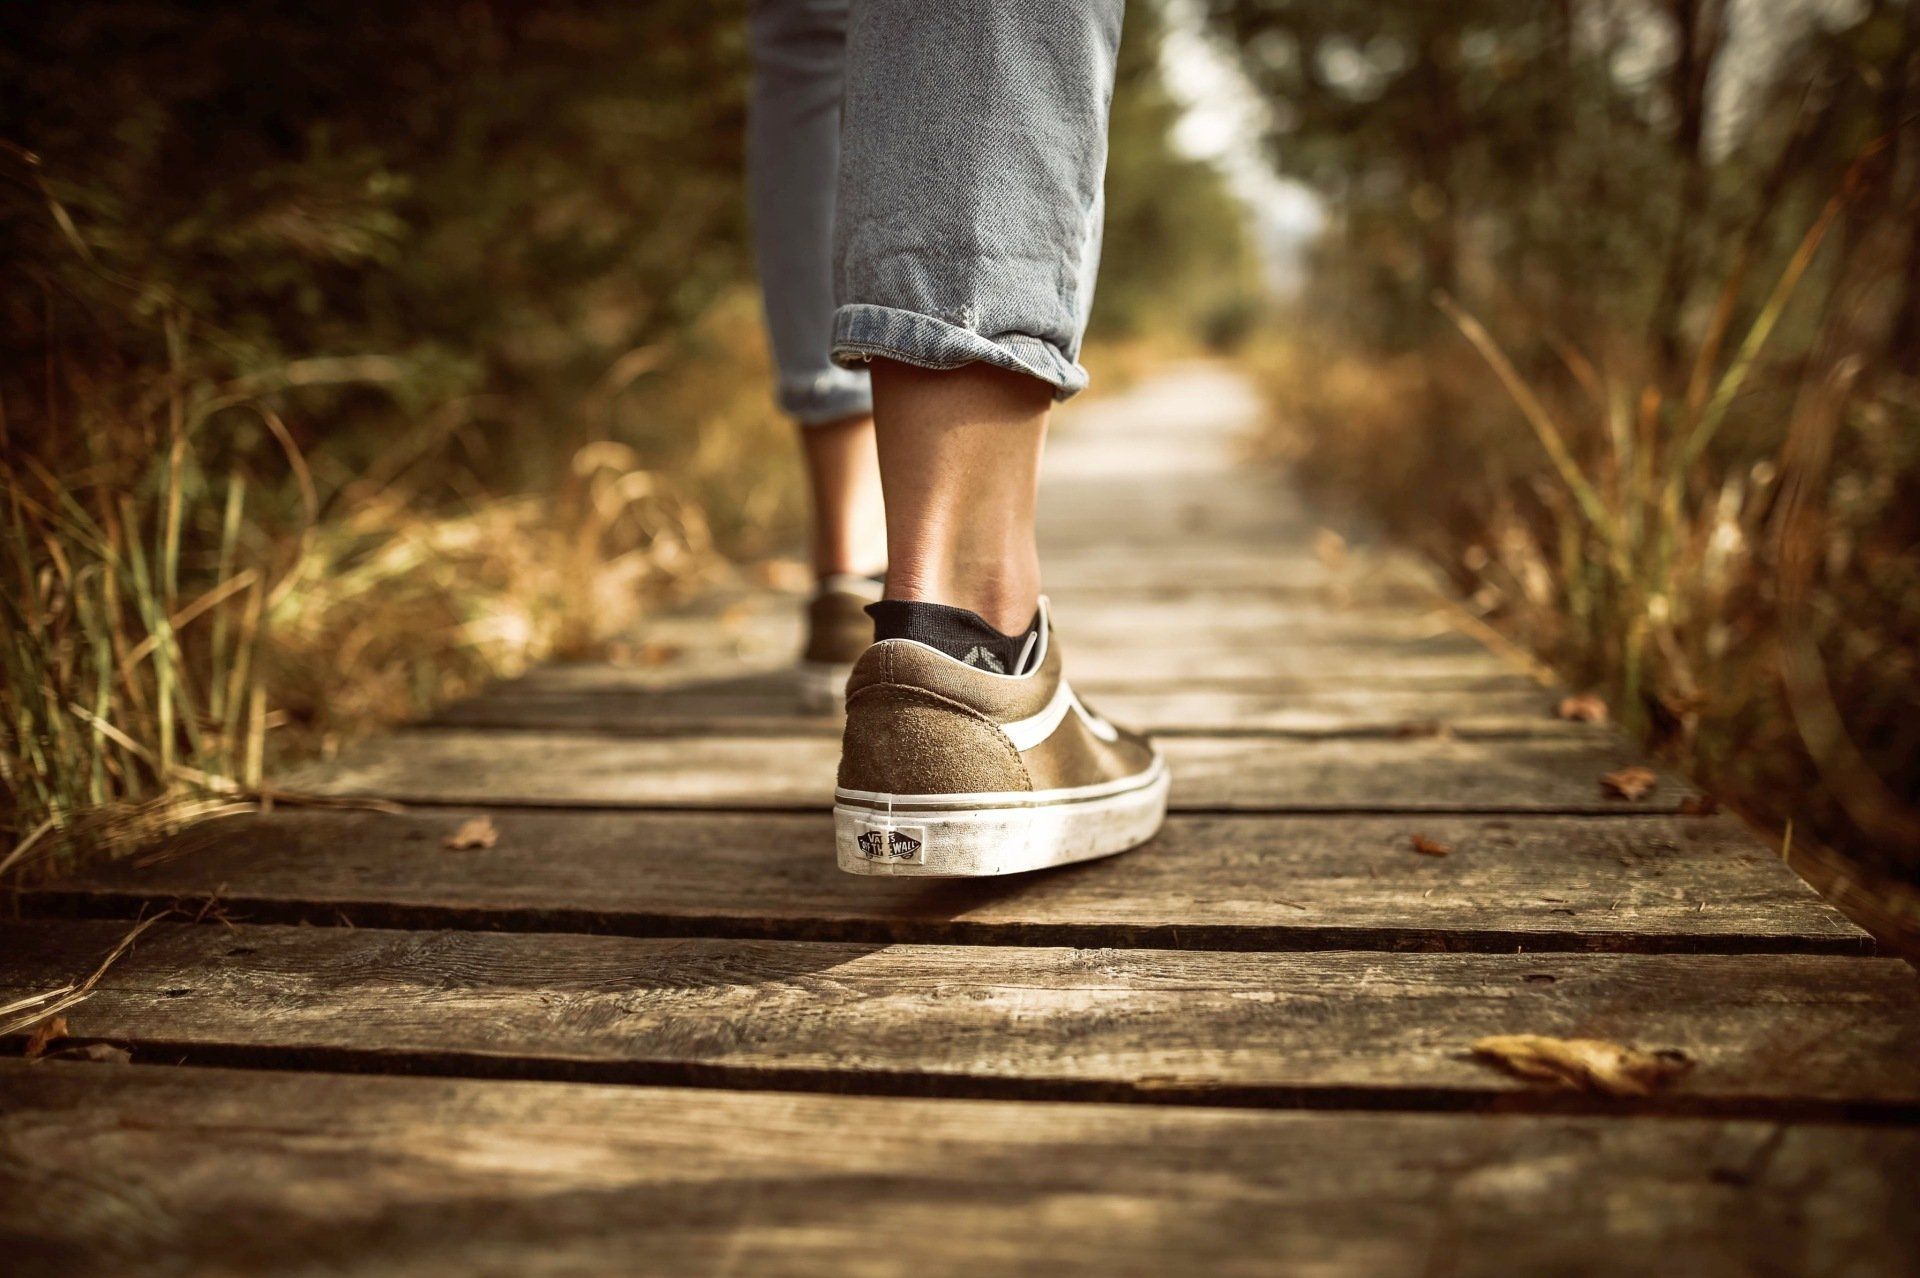 A person is walking across a wooden bridge.